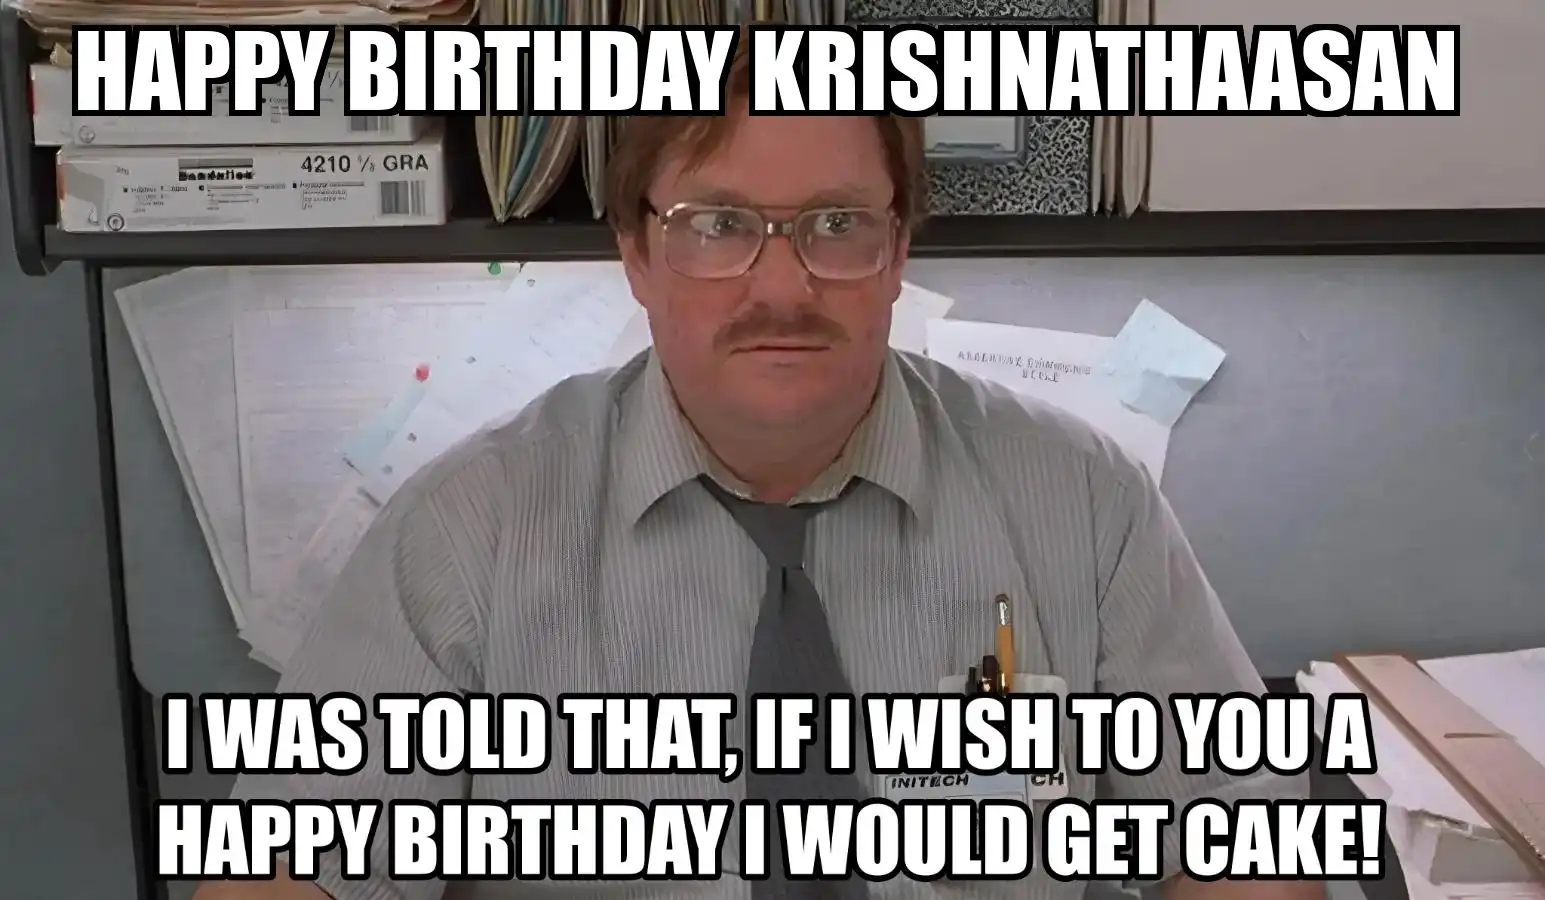 Happy Birthday Krishnathaasan I Would Get A Cake Meme